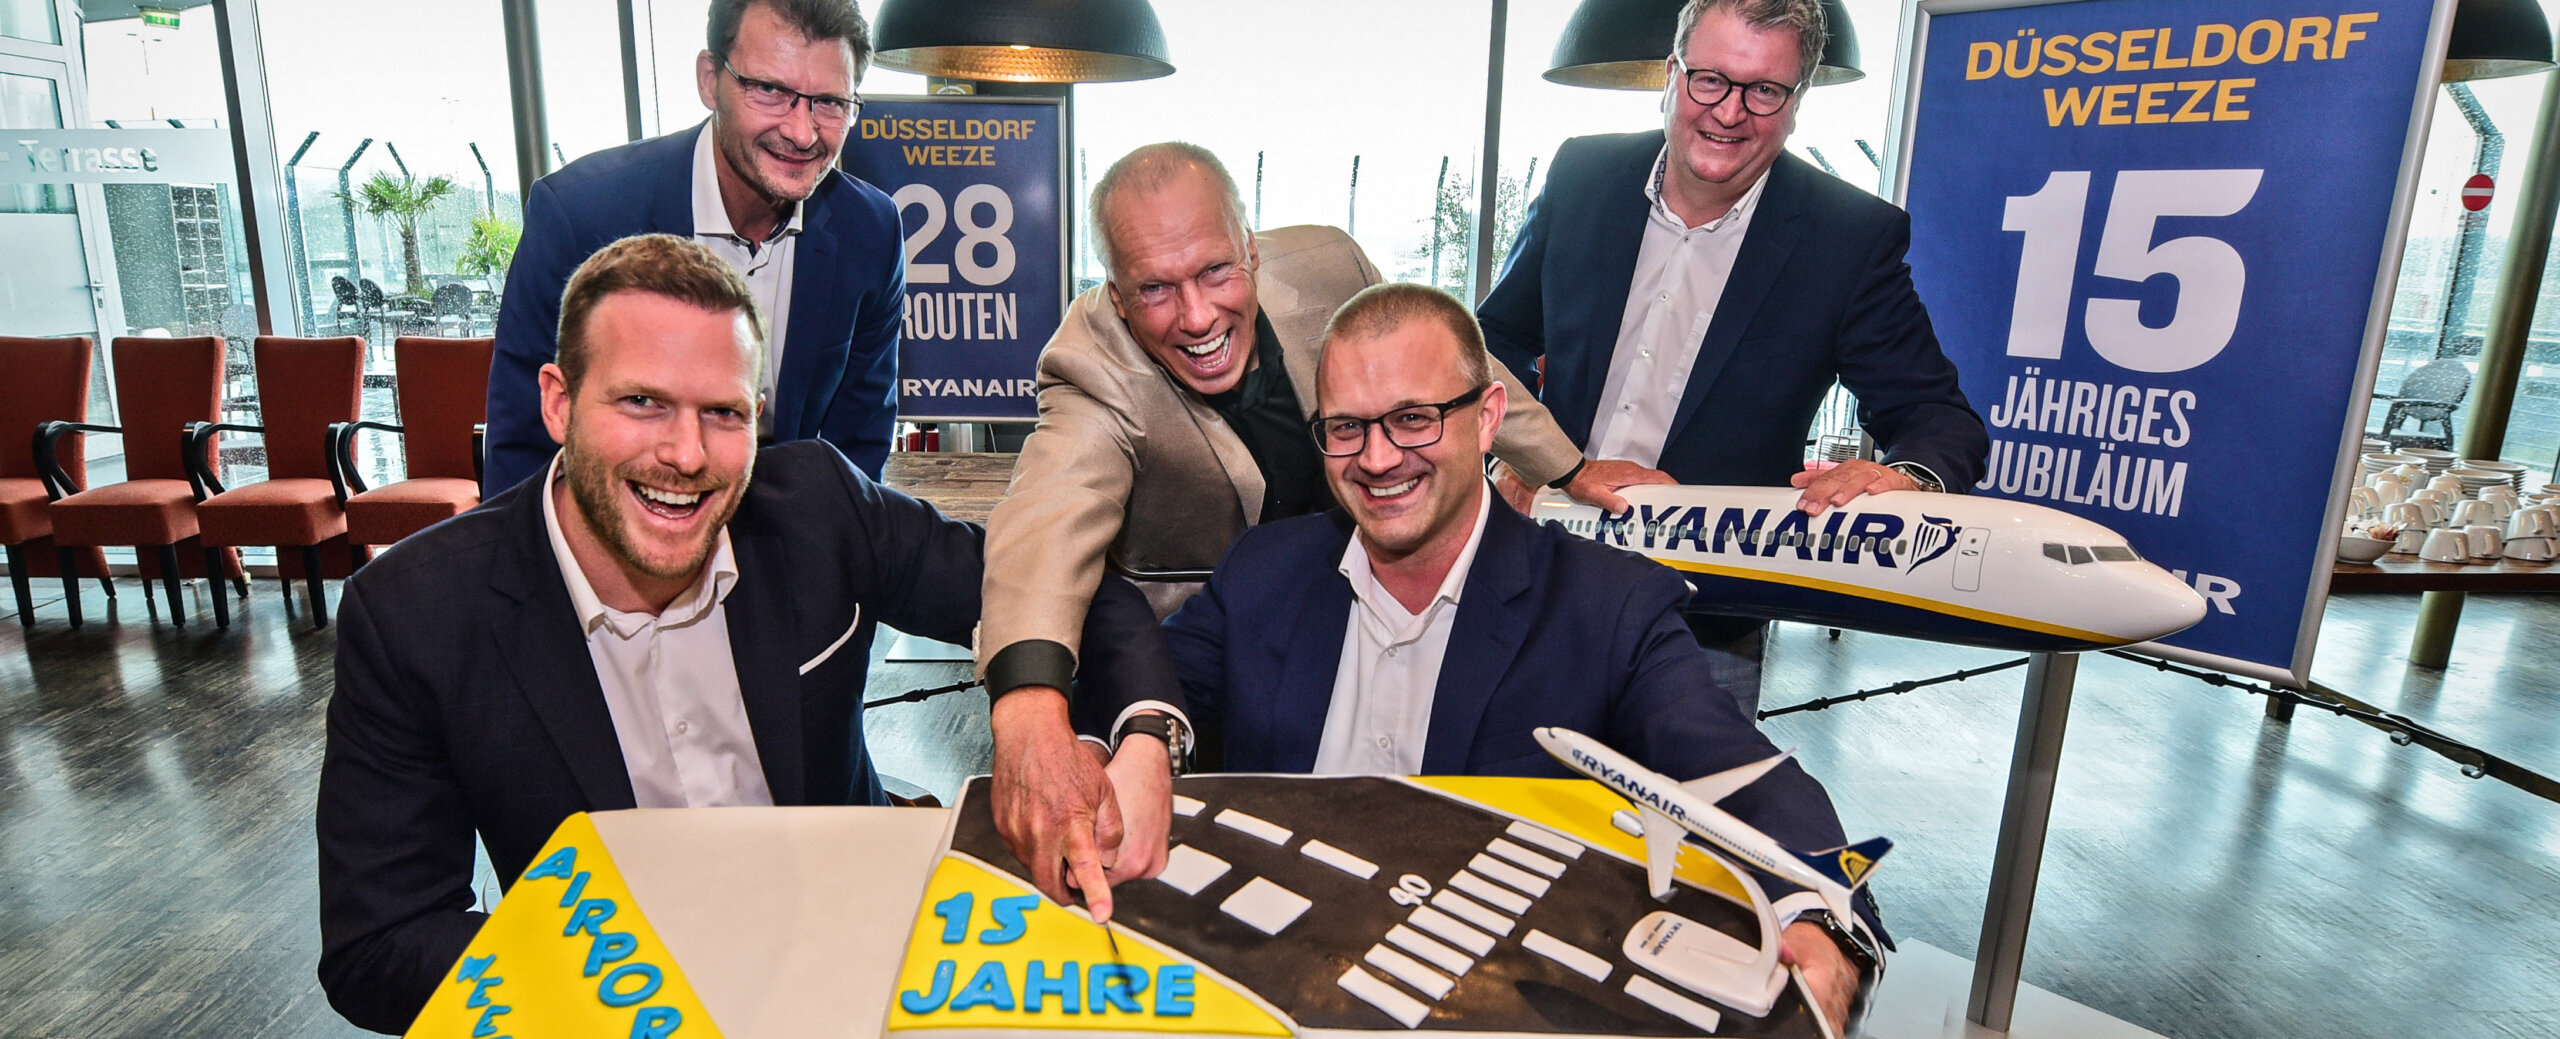 Ryanair Feiert Ihr 15-Jähriges Jubiläum Am  Düsseldorf Weeze